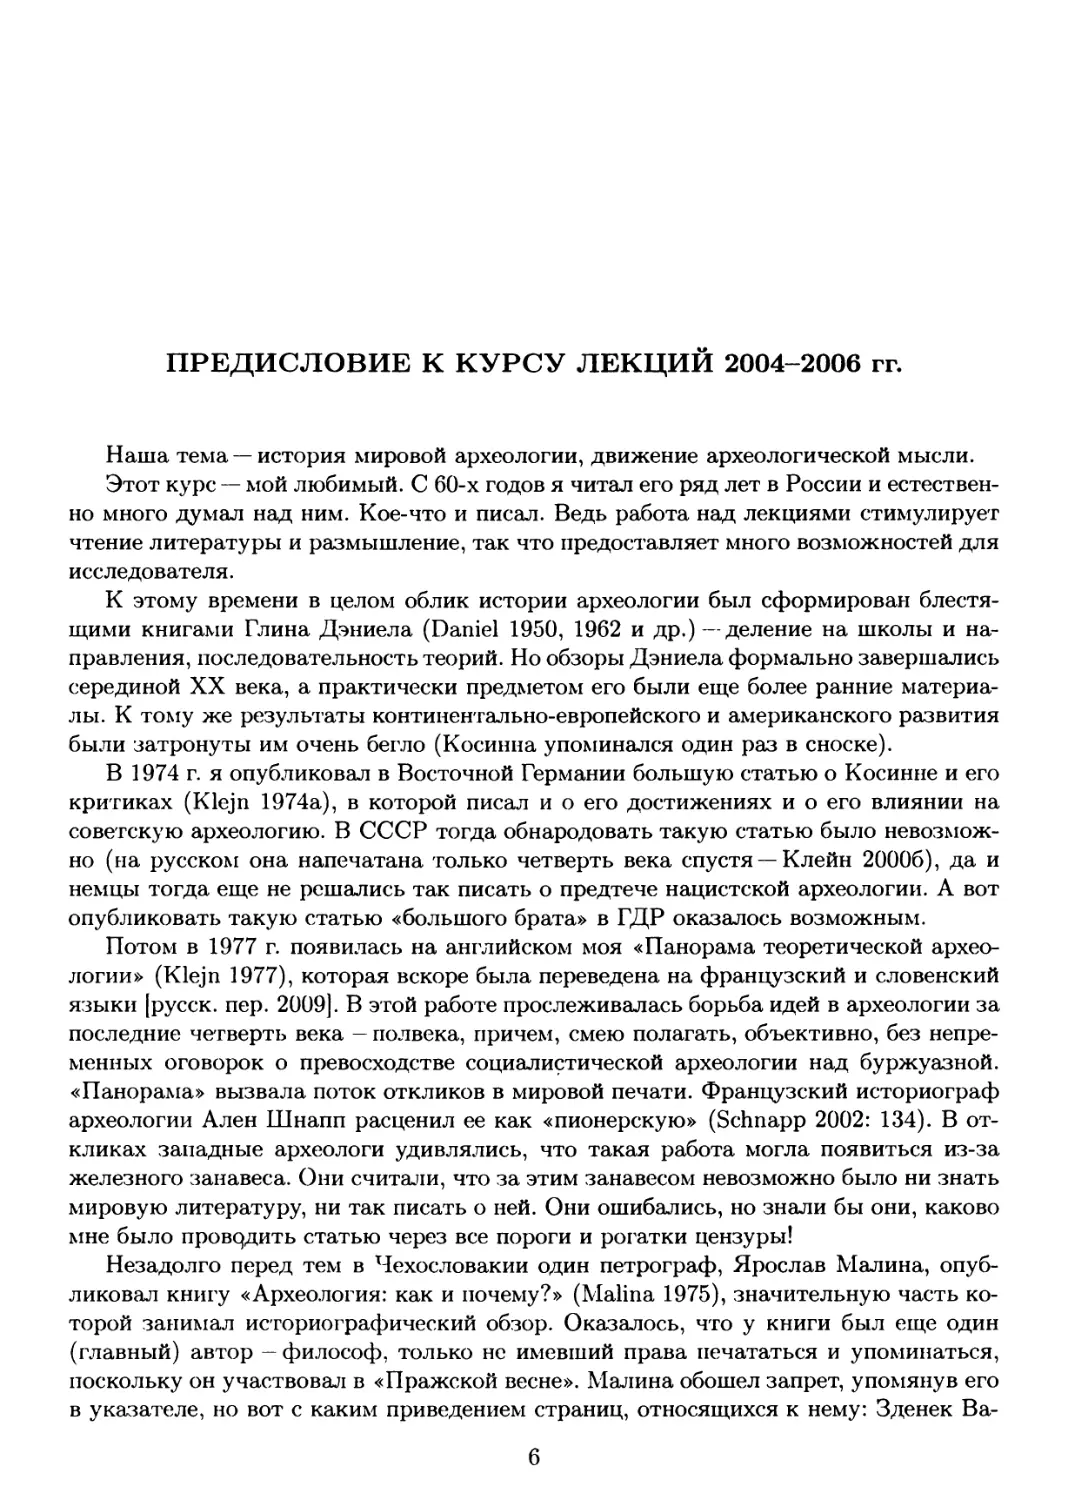 Предисловие к курсу лекций 2004-2006 гг.